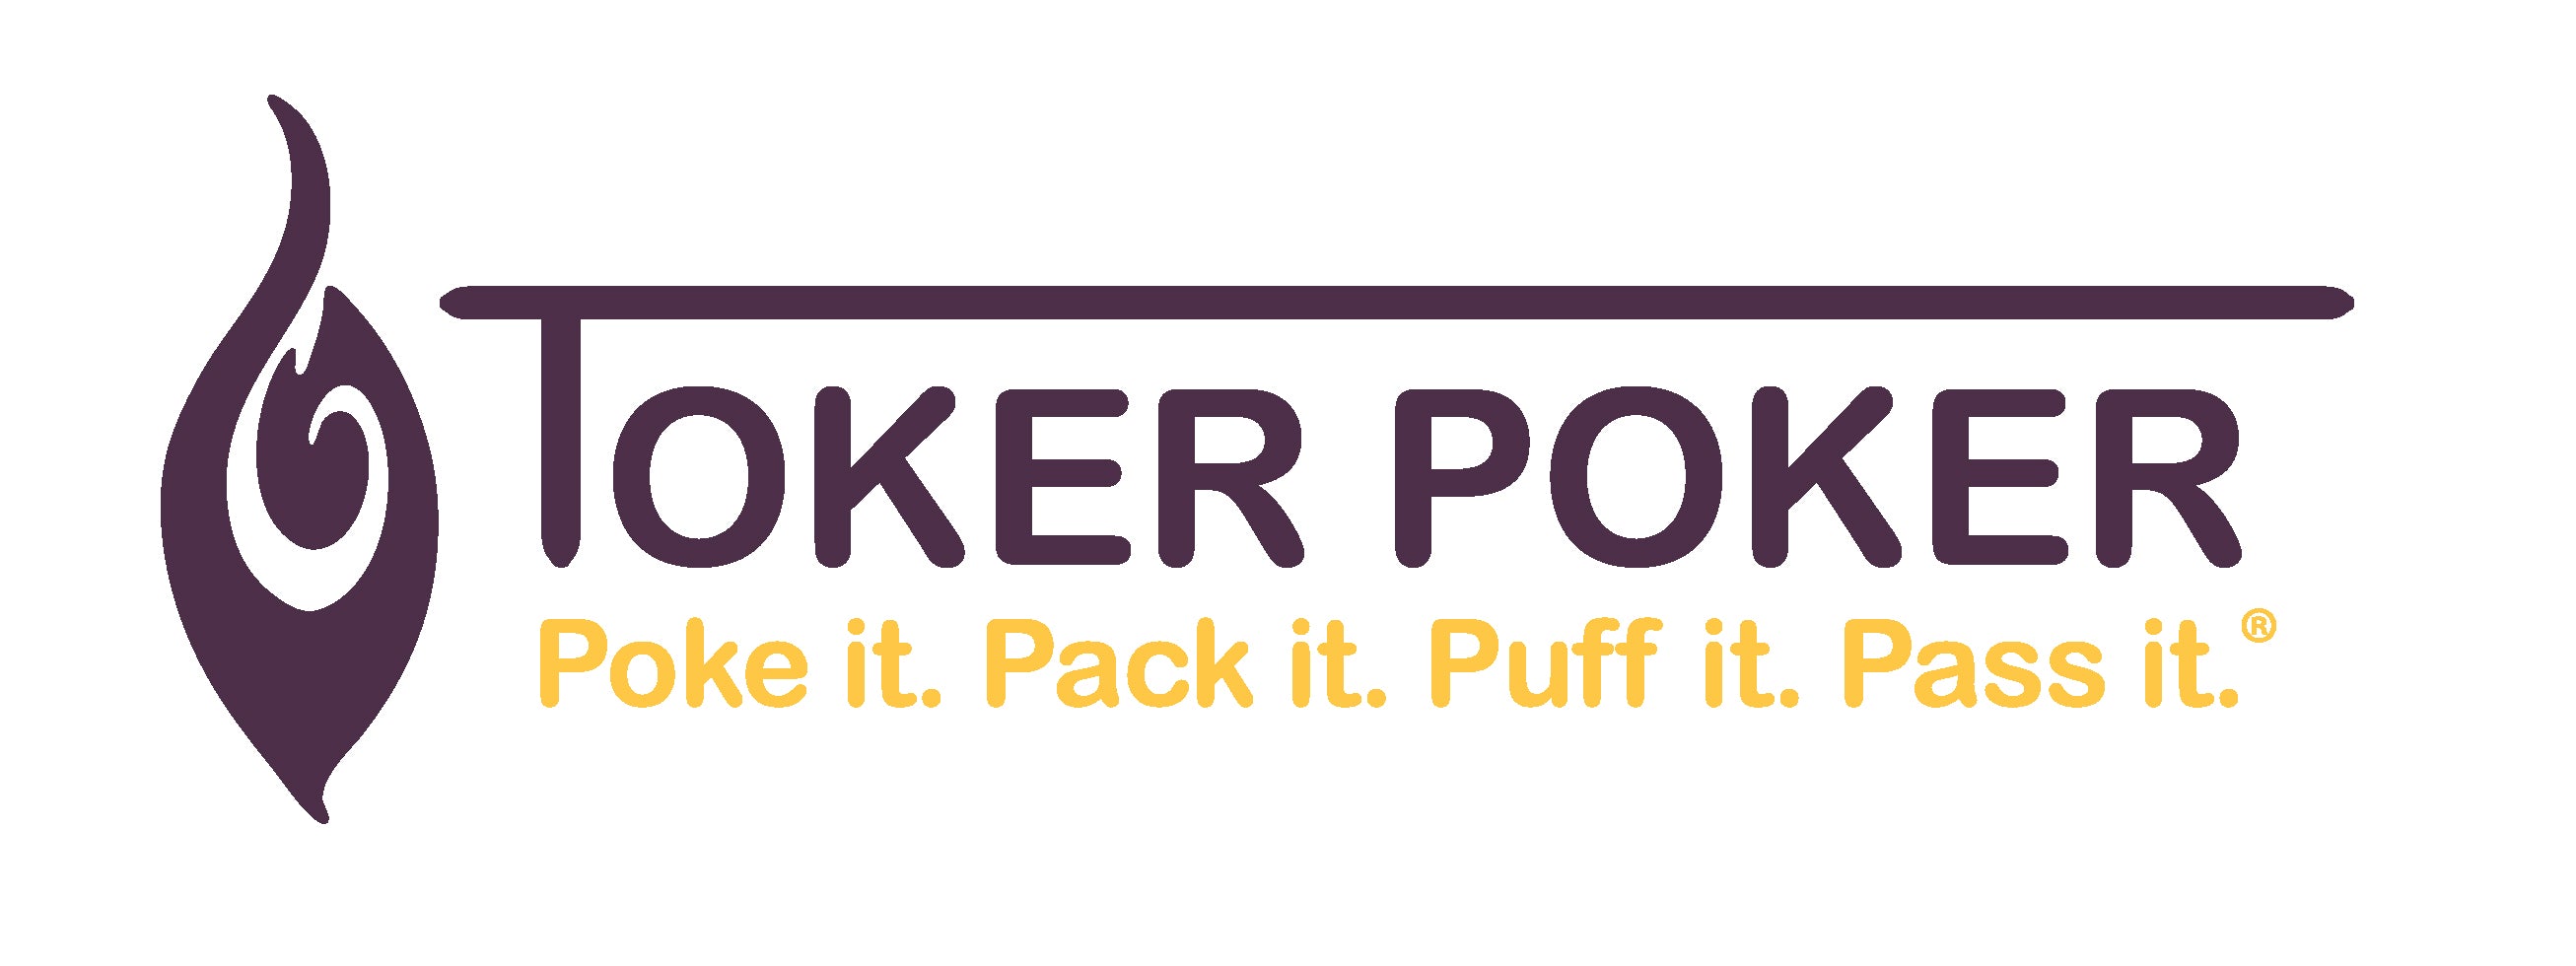 Toker Poker Lighter Multi-Tool Alice in Wonderland Series (25x Pack) -  Magma Holding Inc